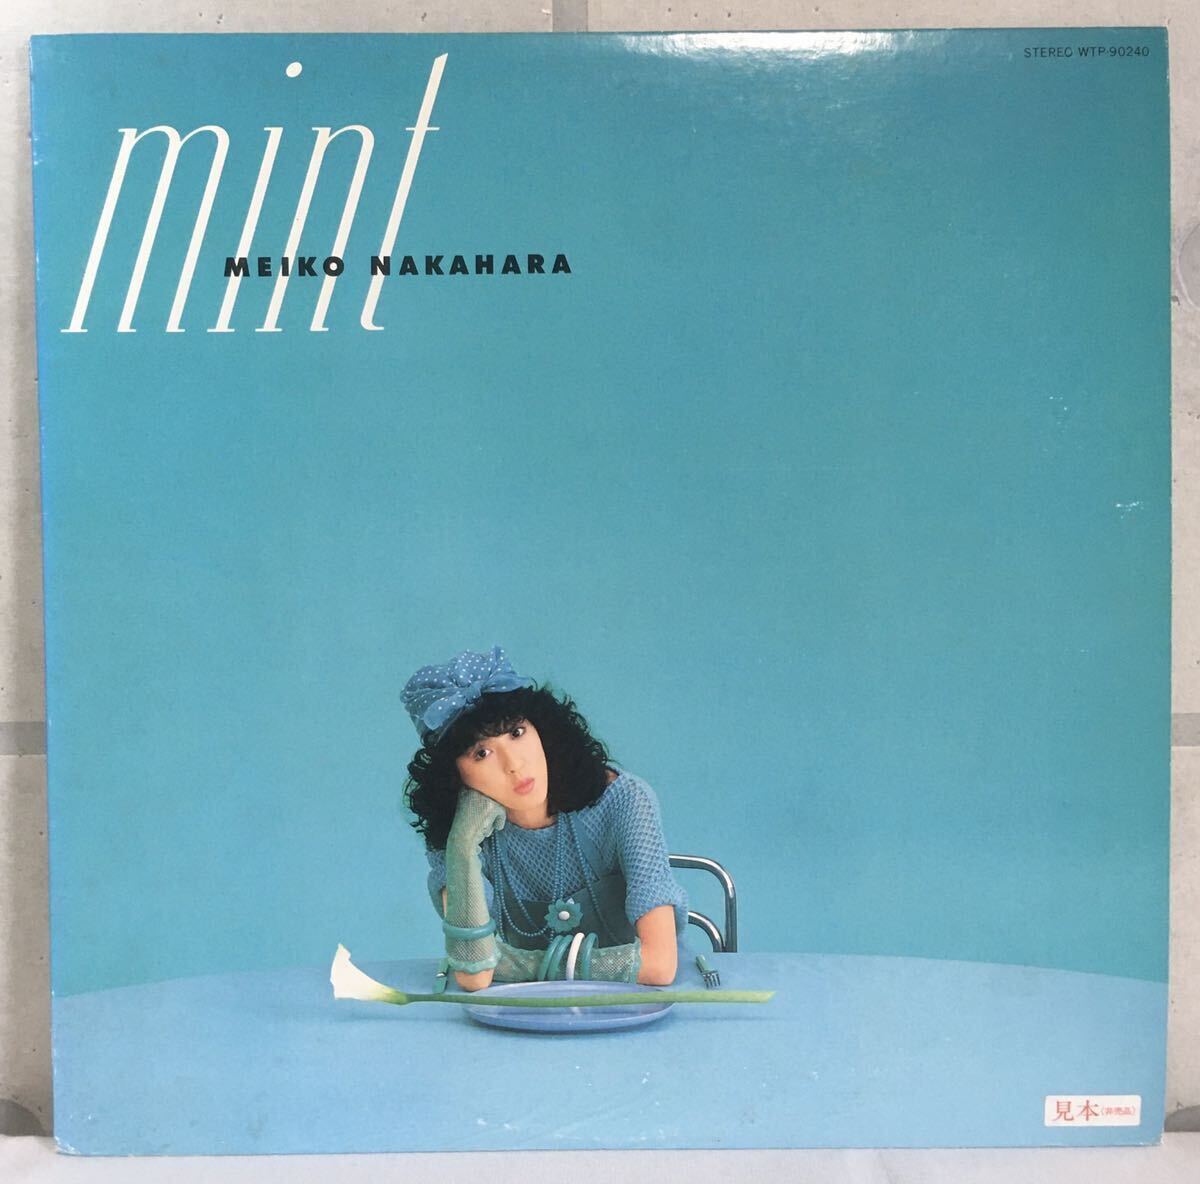 見本盤 LP / 中原めいこ (Meiko Nakahara) - MINT (ミント) / 和モノ CityPop Latin Tropical Disco Boogie / 新川博_画像1